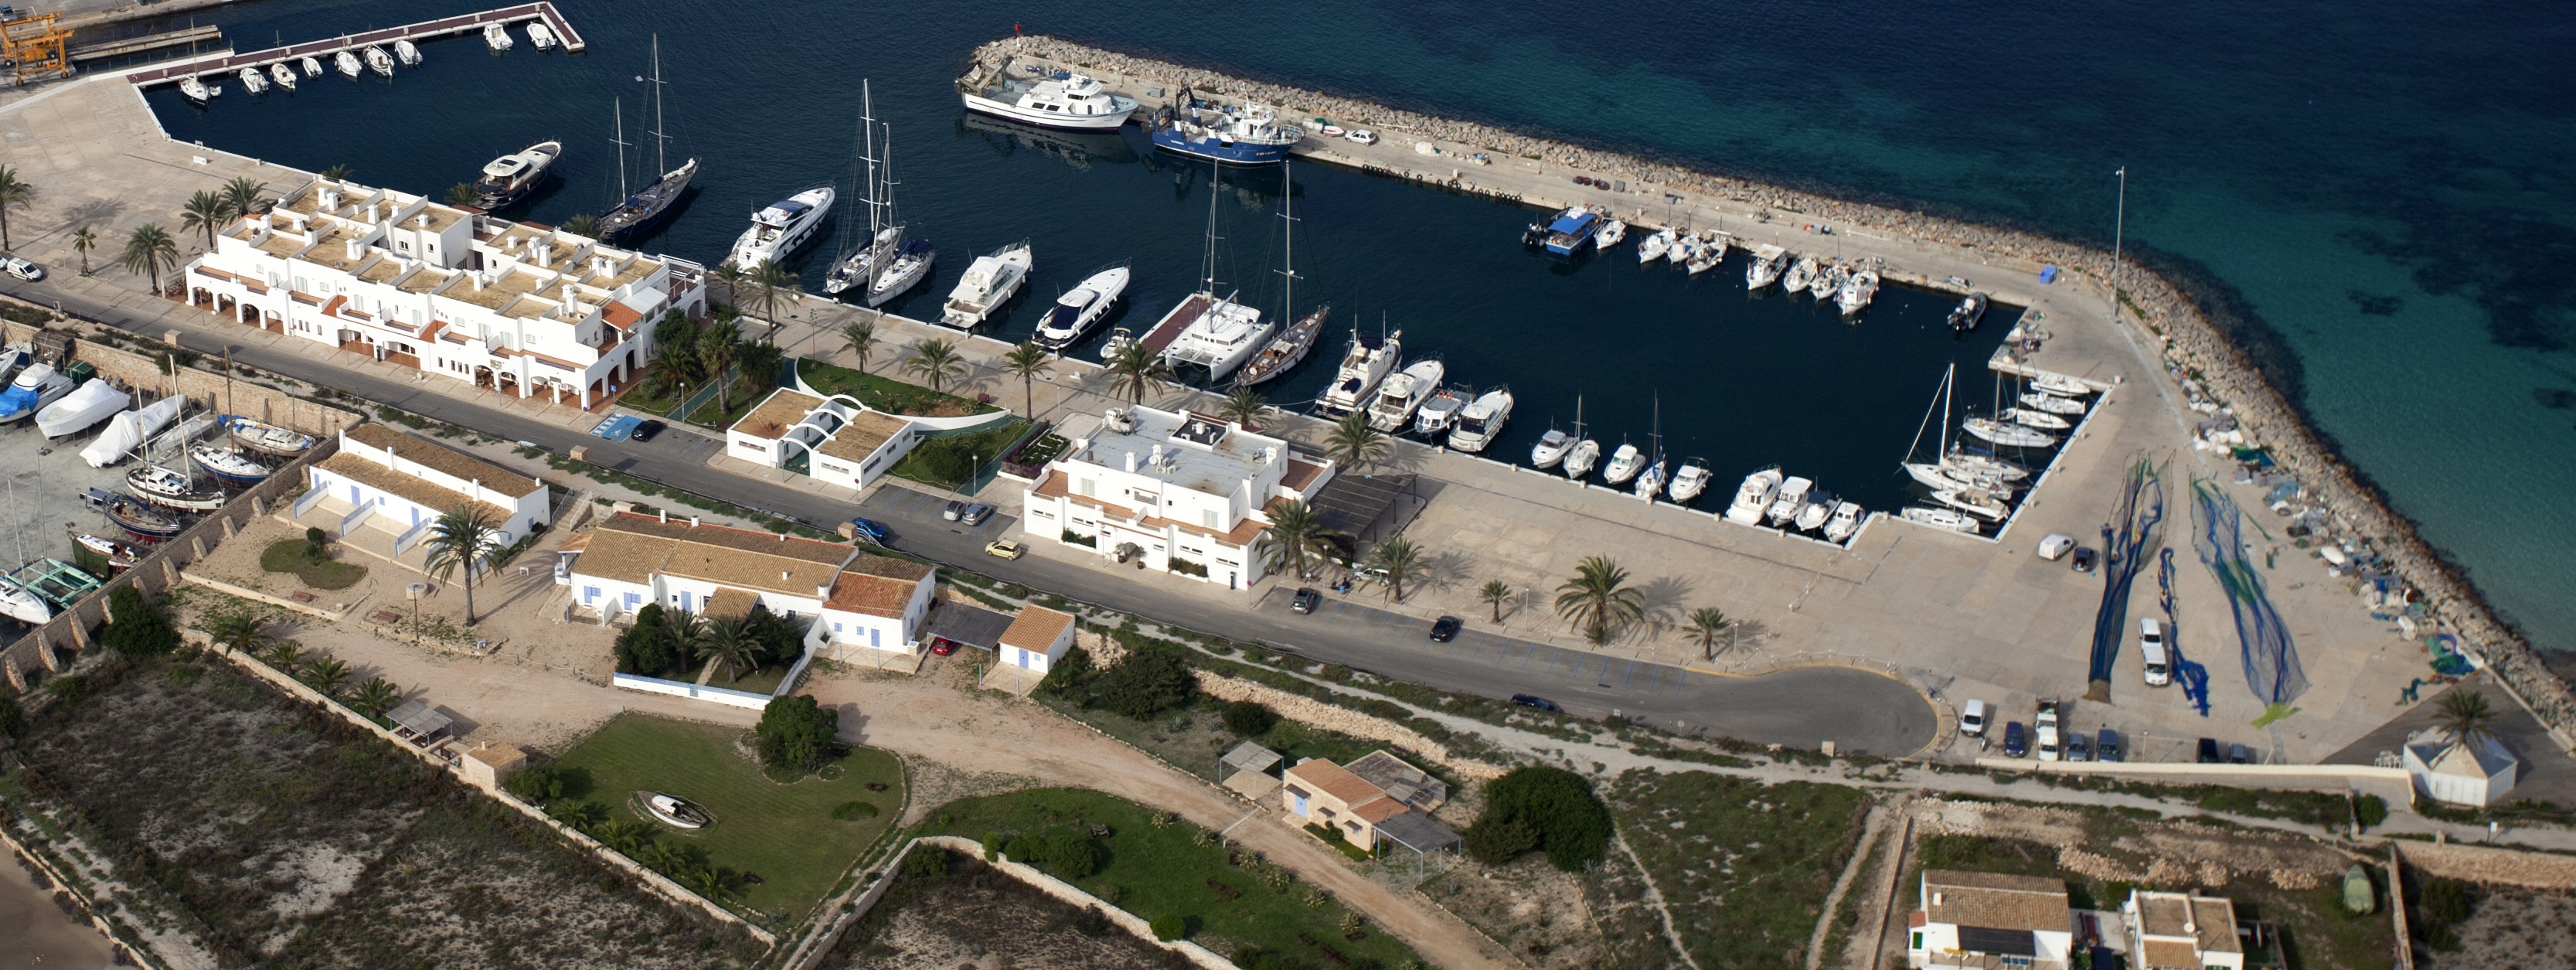 Die APB schreibt die Verwaltung der Liegeplätze des Hafenbeckens für Kleinboote im Hafen La Savina öffentlich aus und archiviert den vom Jachtclub Formentera eingereichten Konzessionsantrag